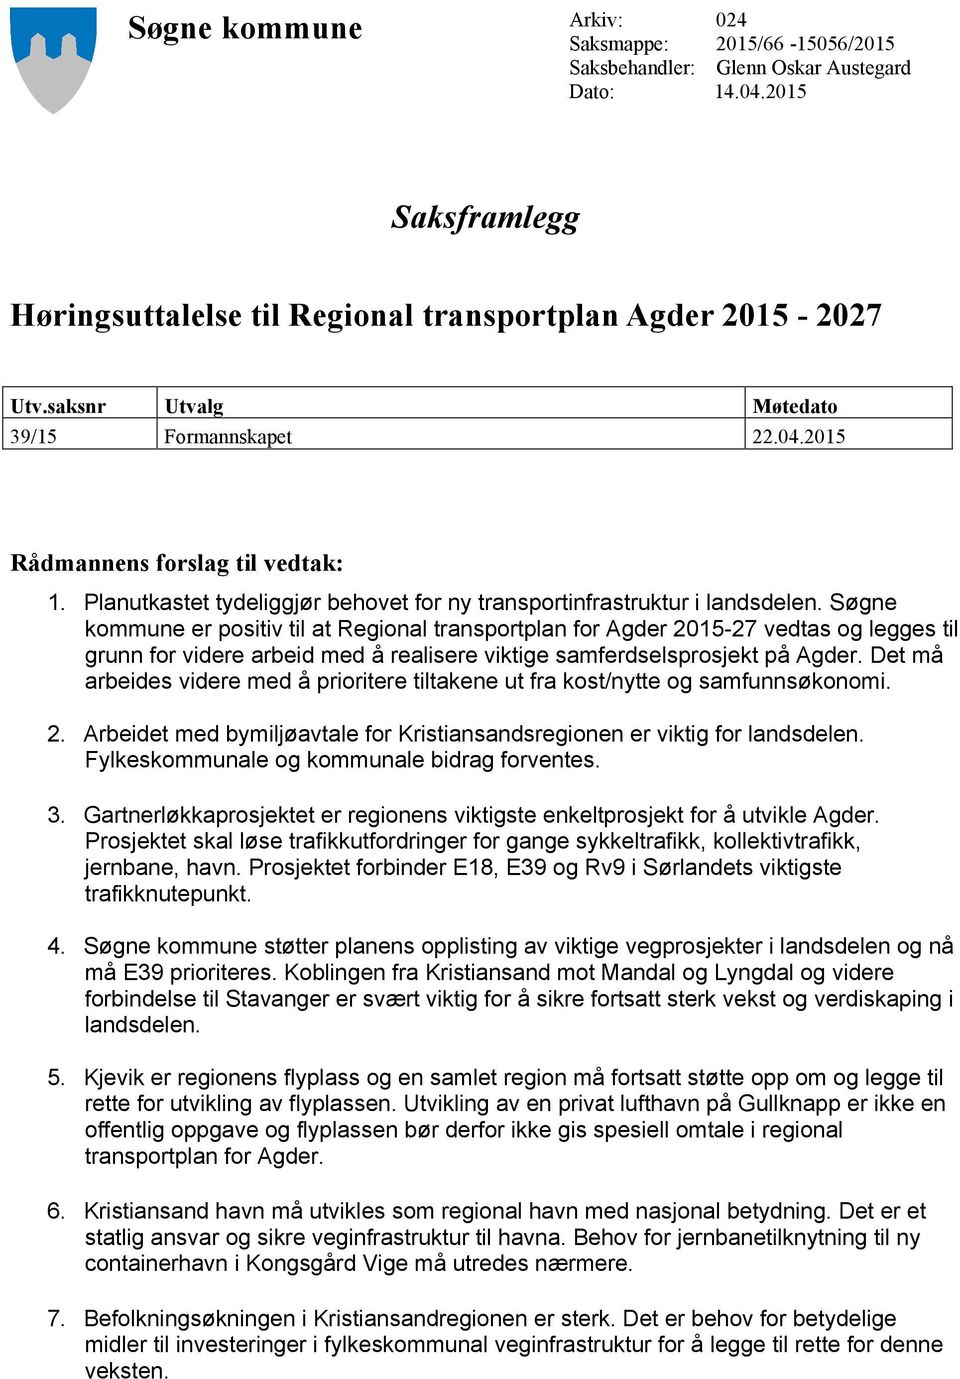 Søgne kommune er positiv til at Regional transportplan for Agder 2015-27 vedtas og legges til grunn for videre arbeid med å realisere viktige samferdselsprosjekt på Agder.